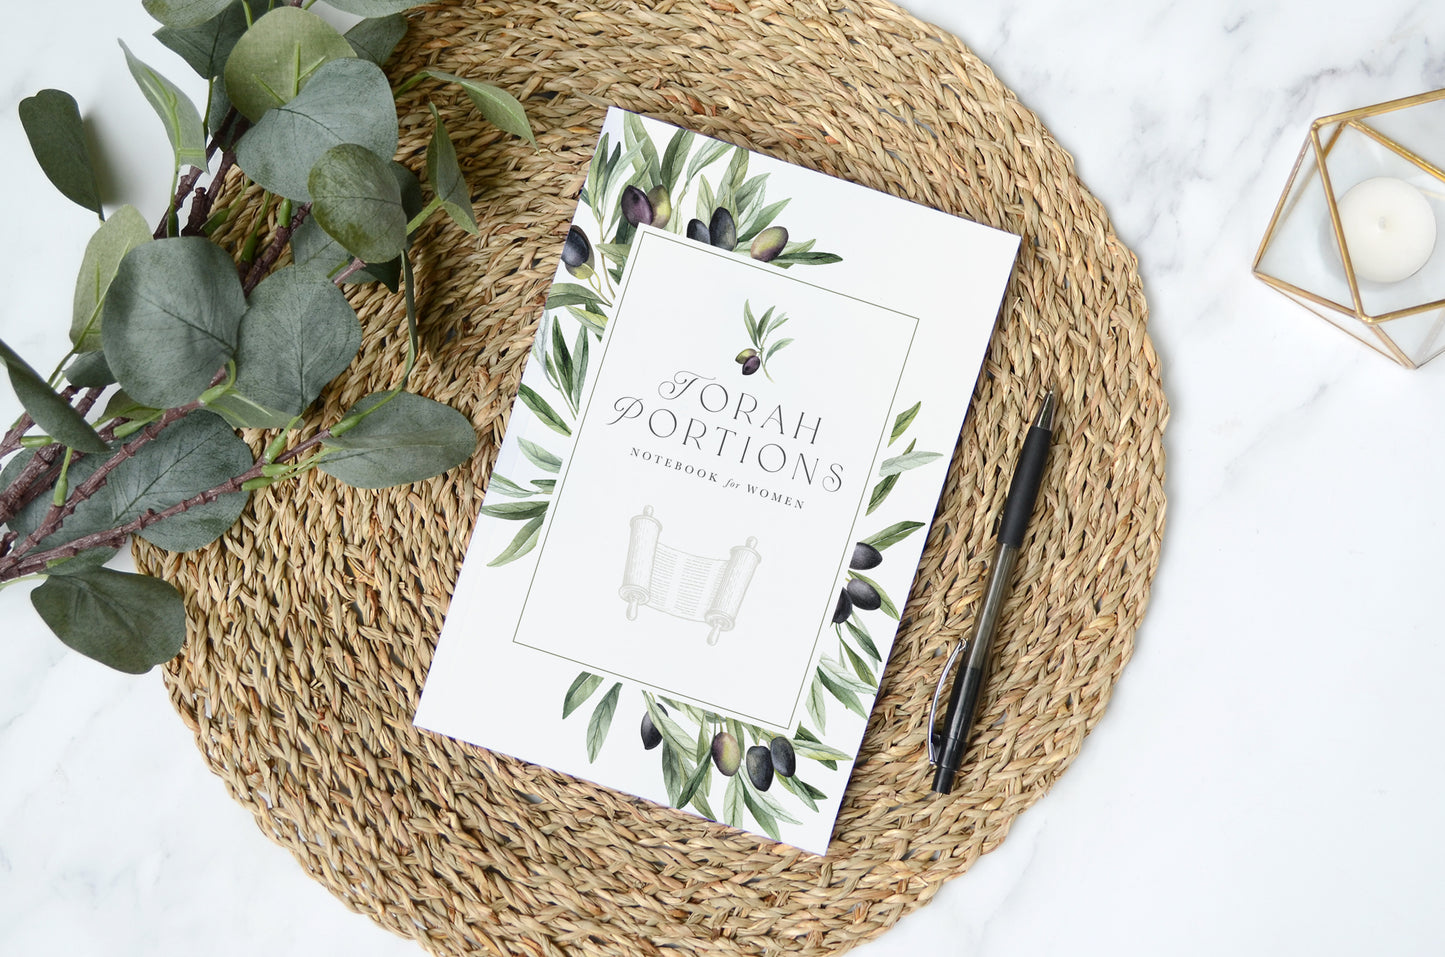 Torah Portions Notebook for Women: Olive Branch Design, Paperback